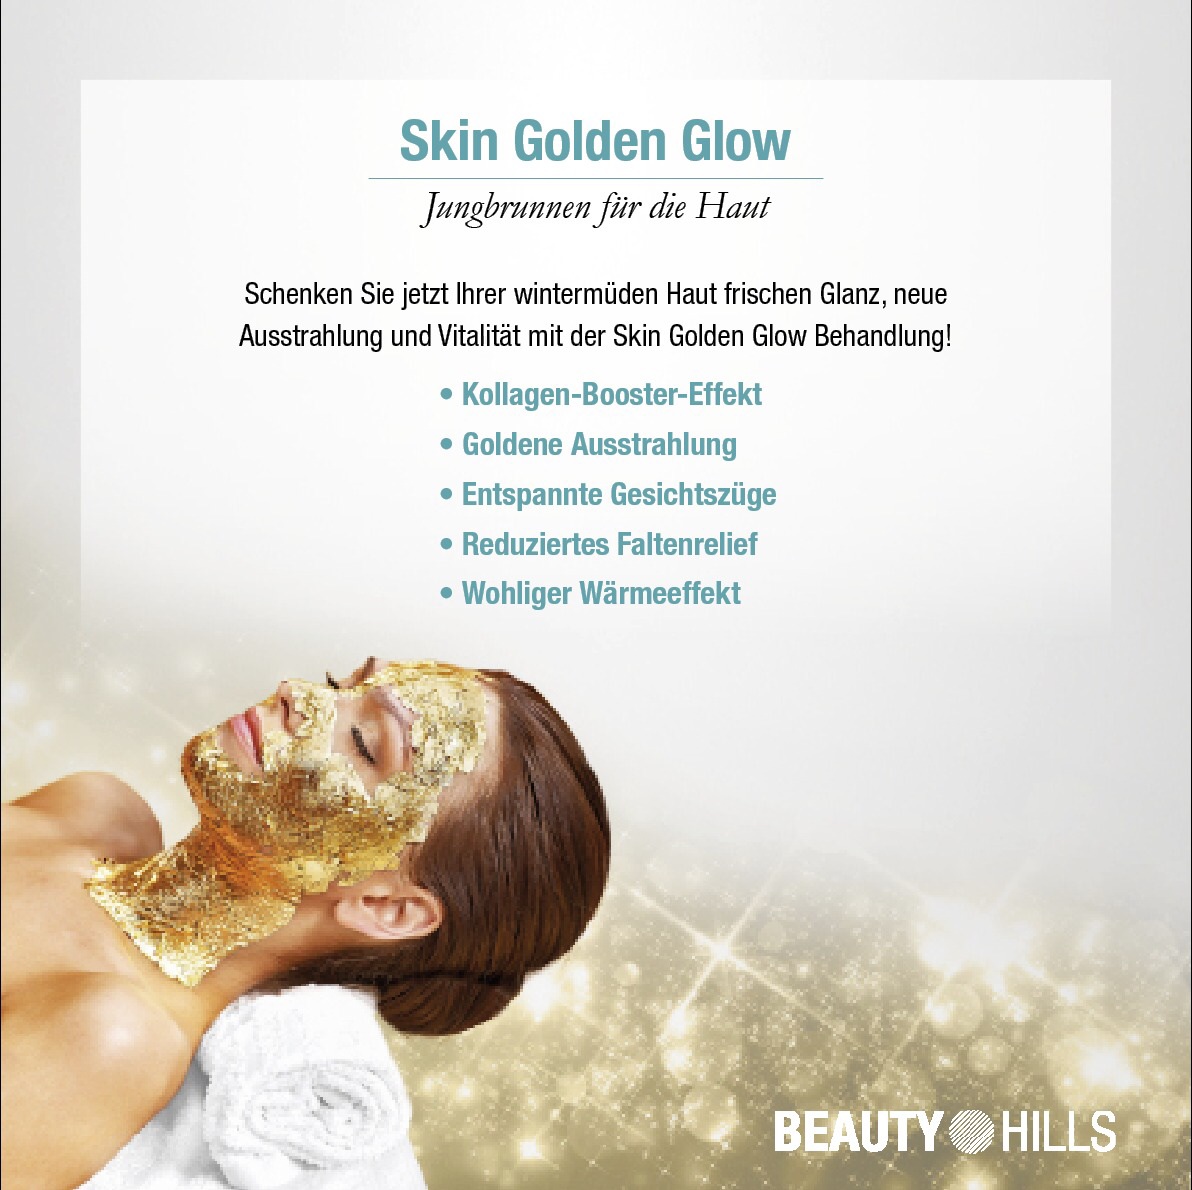 Skin Golden Glow-Behandlung!

-nicht nur Luxuriös, sondern auch effektiv